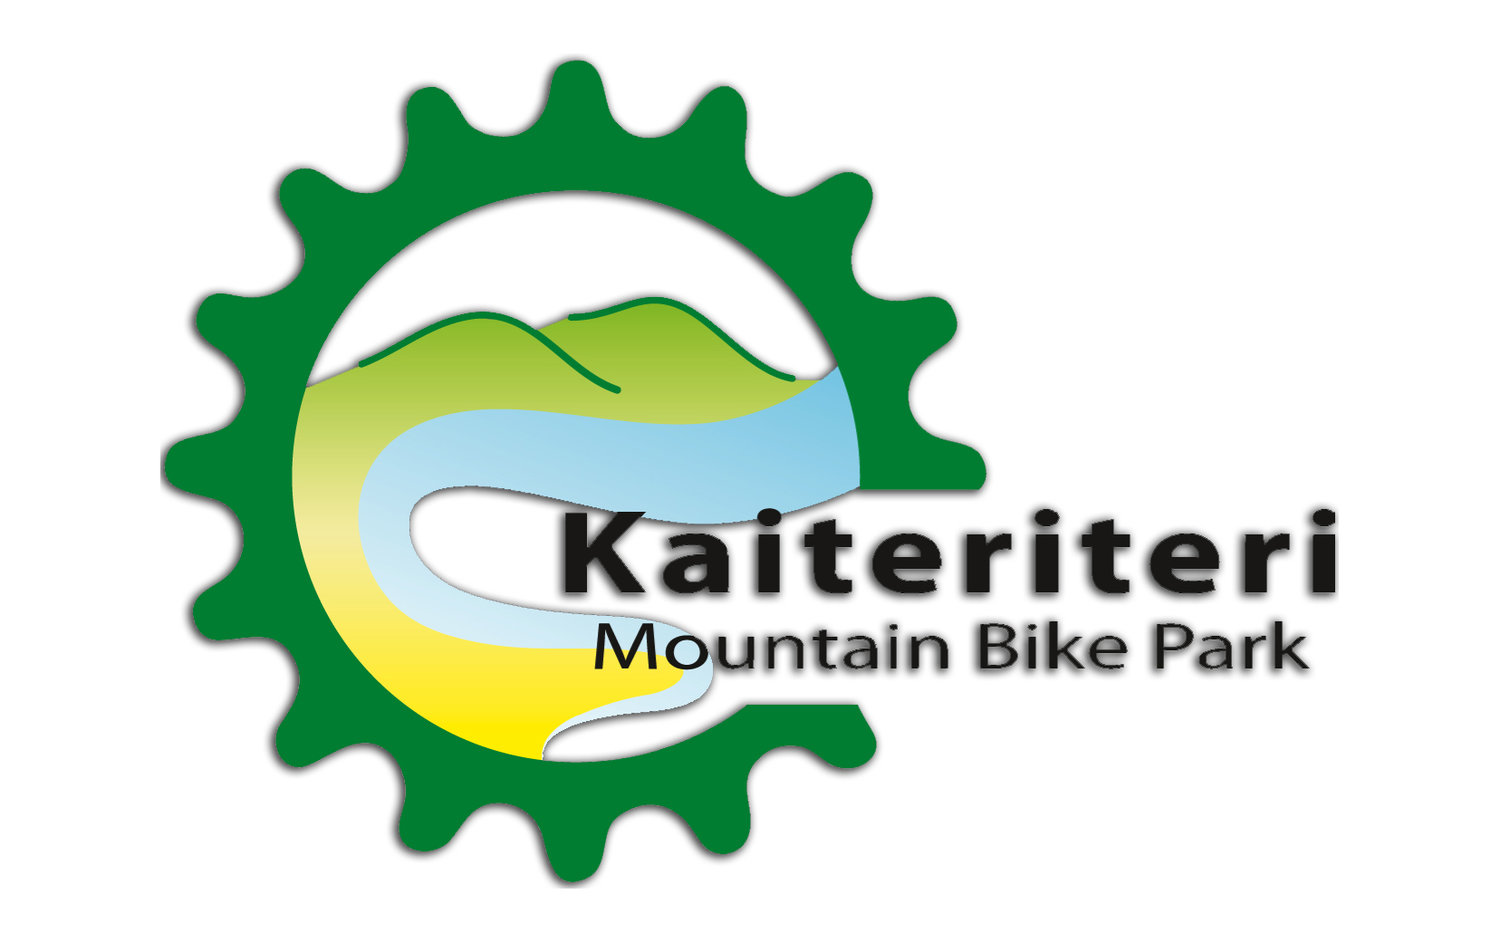 Kaiteriteri Mountain Bike Park